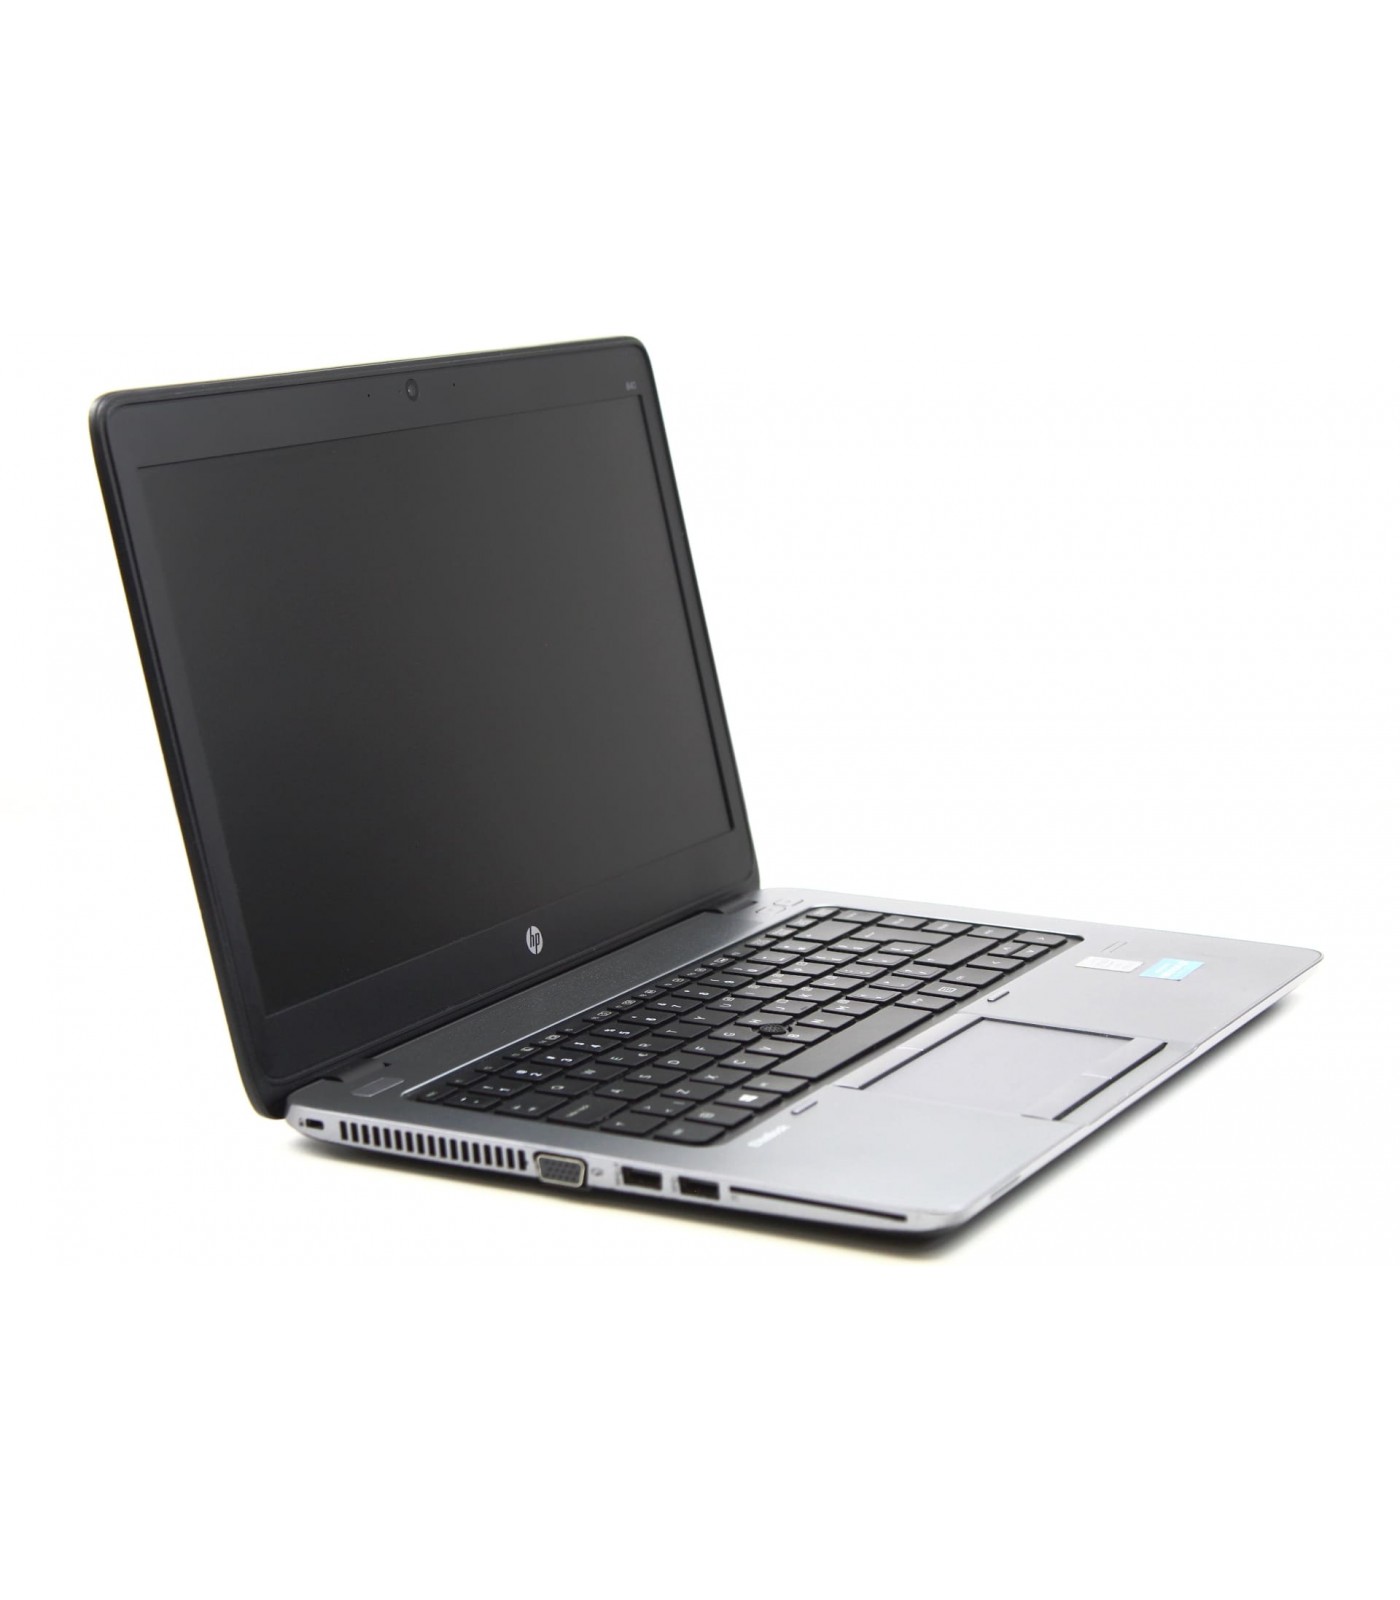 Poleasingowy laptop HP EliteBook 840 G1 z Intel Core i5-4210U w Klasie A